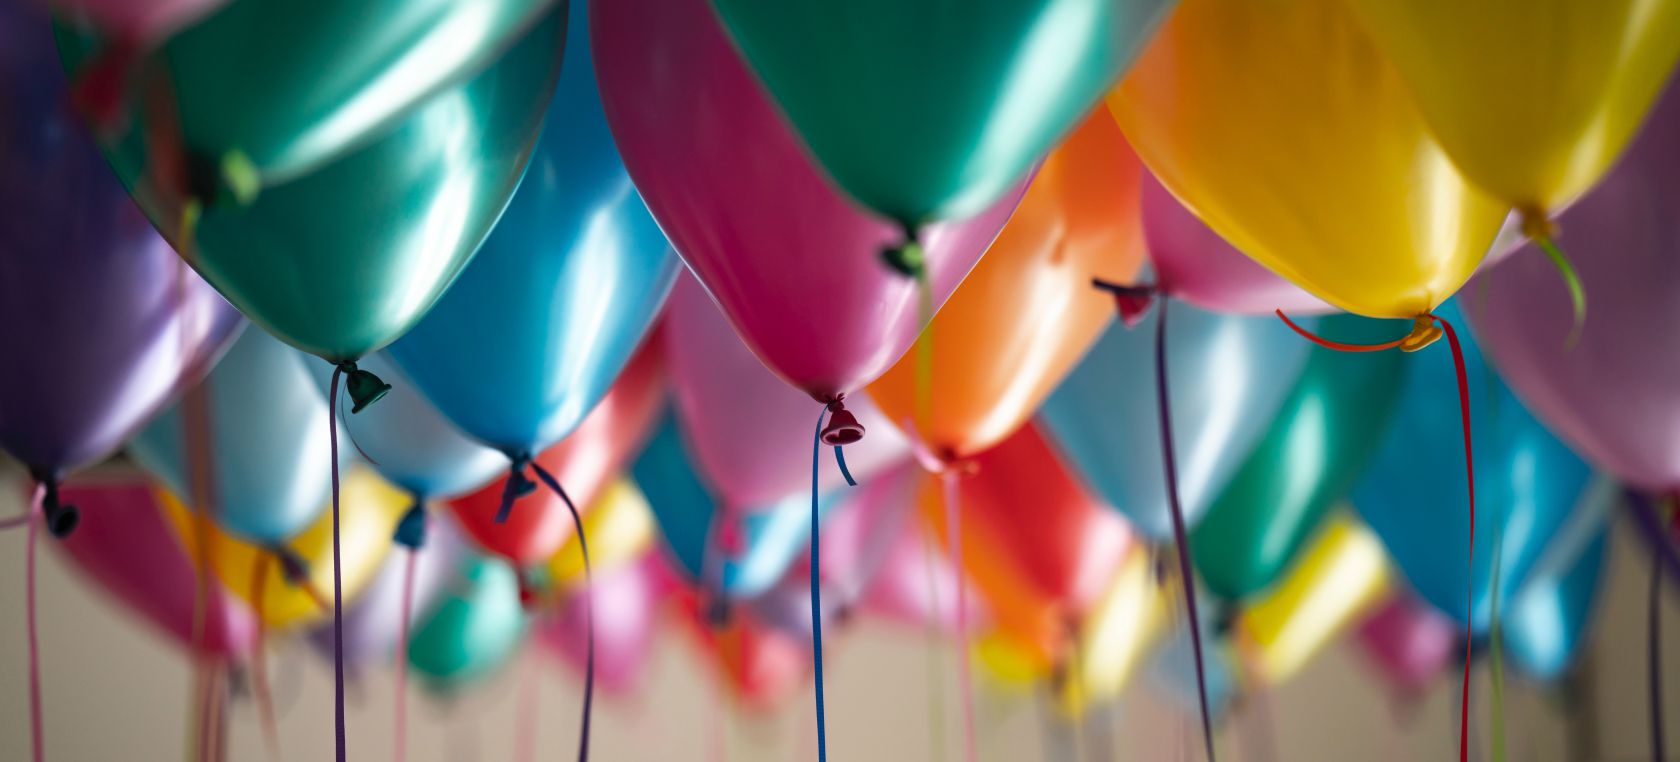 66 ideas para crear tus felicitaciones de cumpleaños | Big bang LOS40